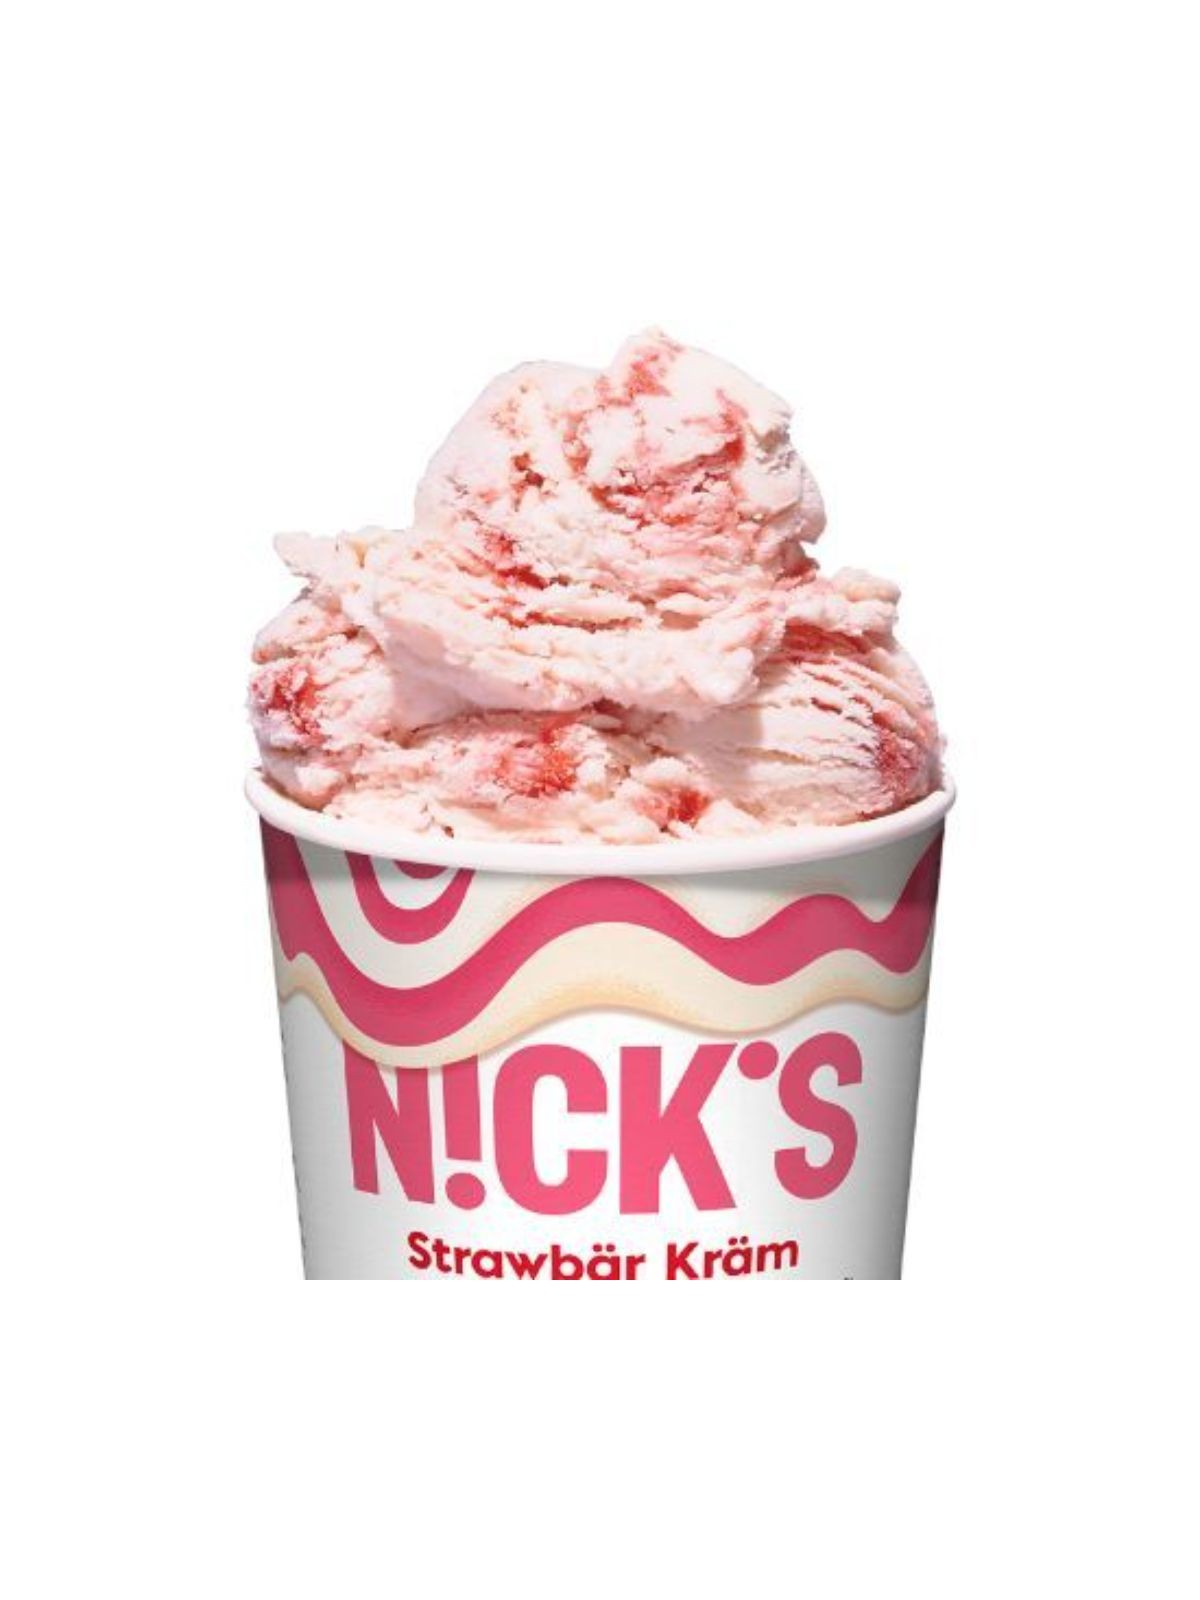 Order Nick's Vegan Strawbar Kram Ice Cream (1 Pint) food online from Goodees Cravings store, Los Angeles on bringmethat.com